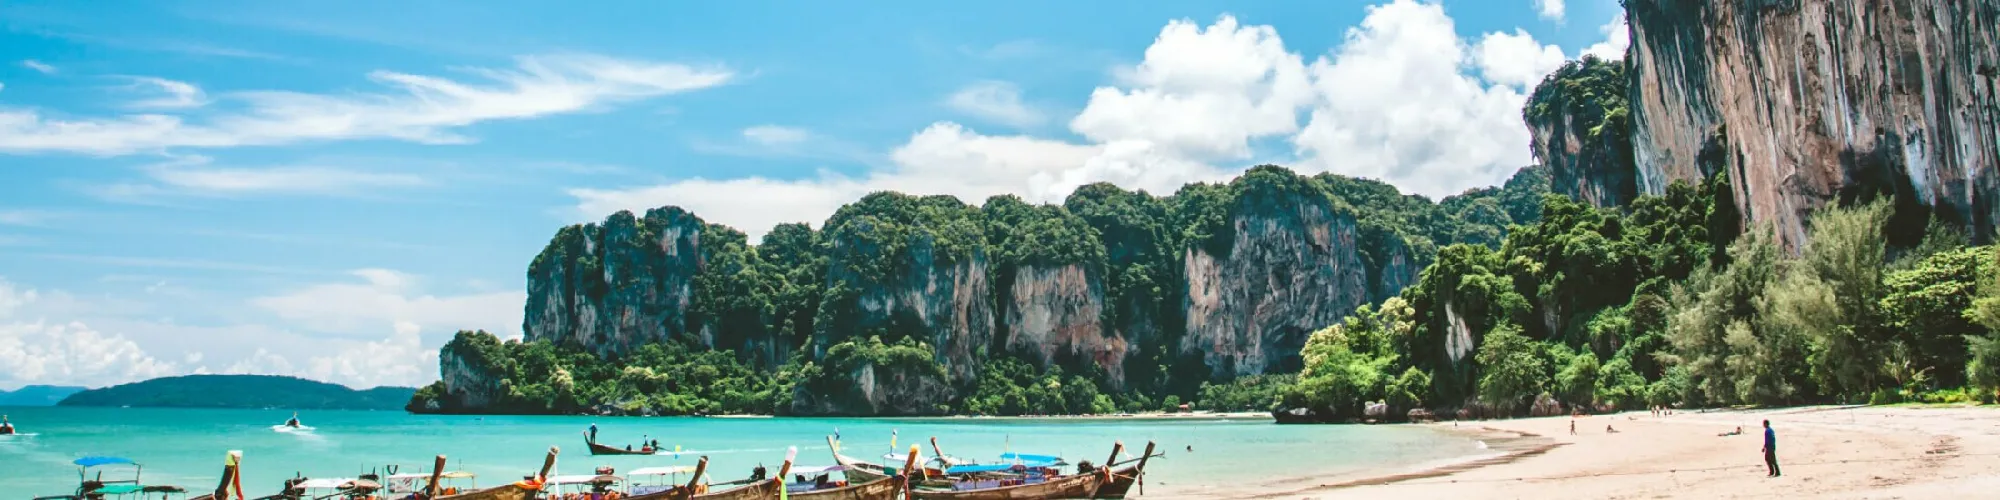 Urlaub in Thailand background image